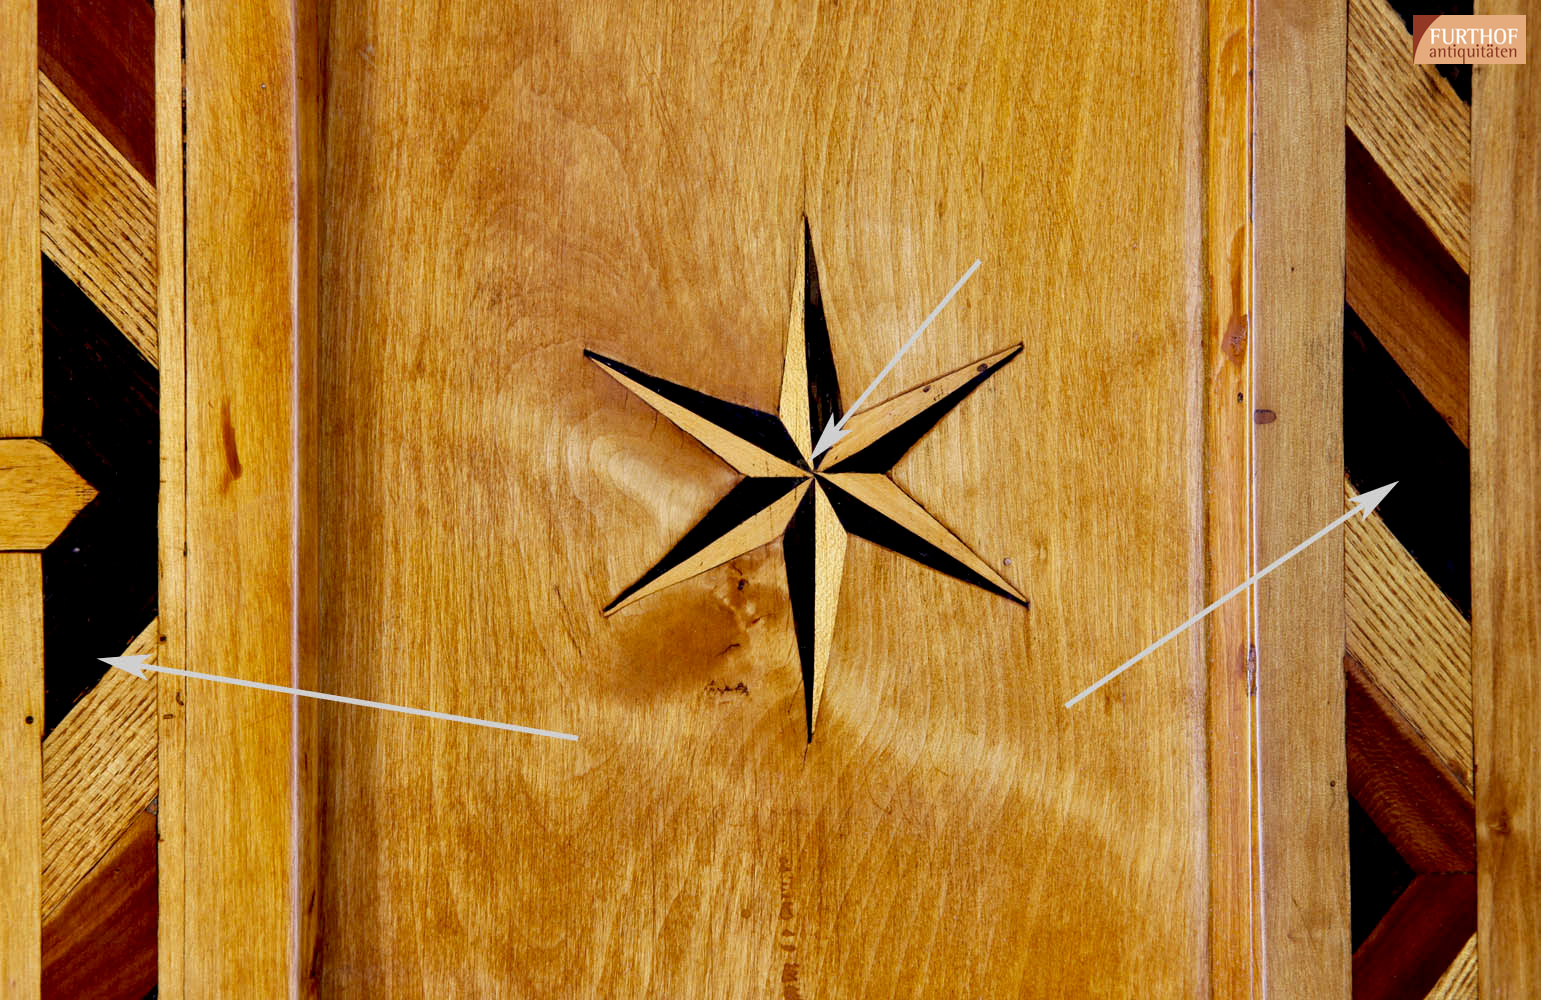 Detailfoto: Intarsierter Stern und intarsierte Bänder